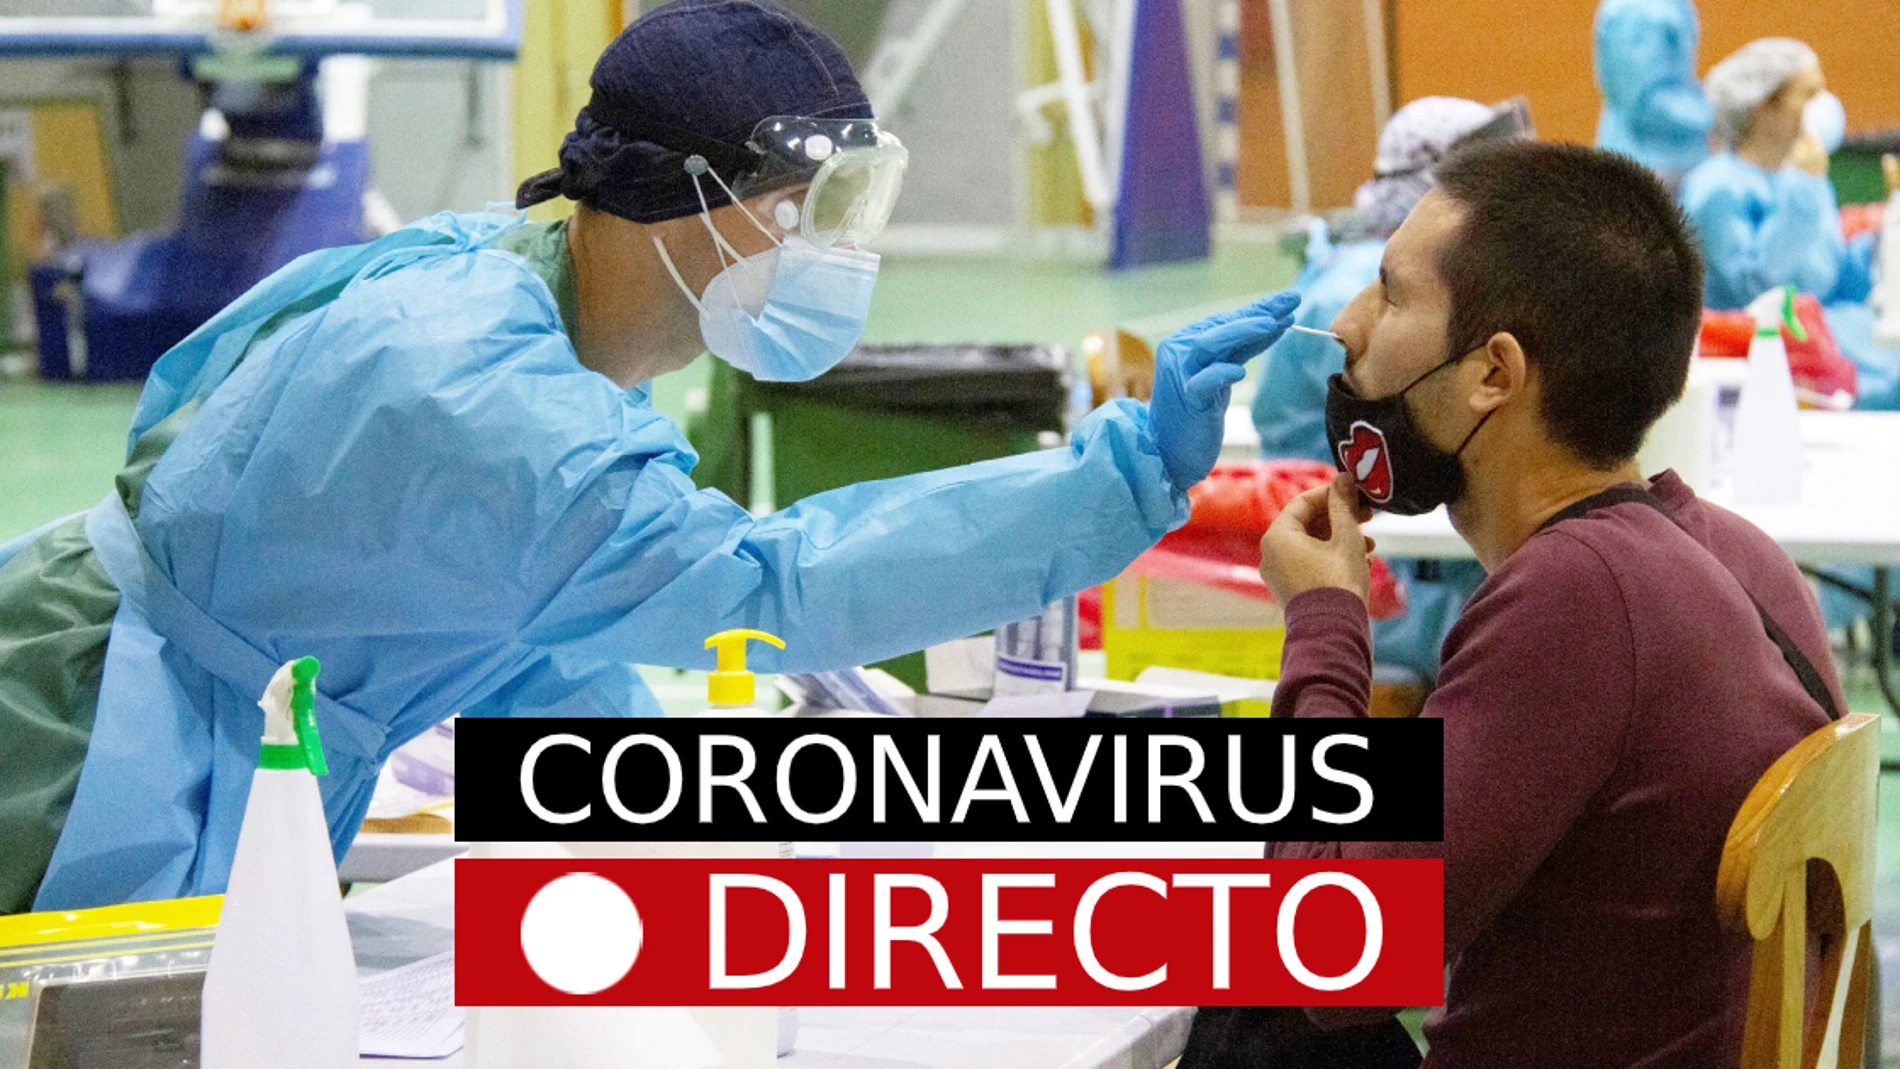 Coronavirus España, hoy | Nuevas restricciones y medidas por el COVID-19, en directo